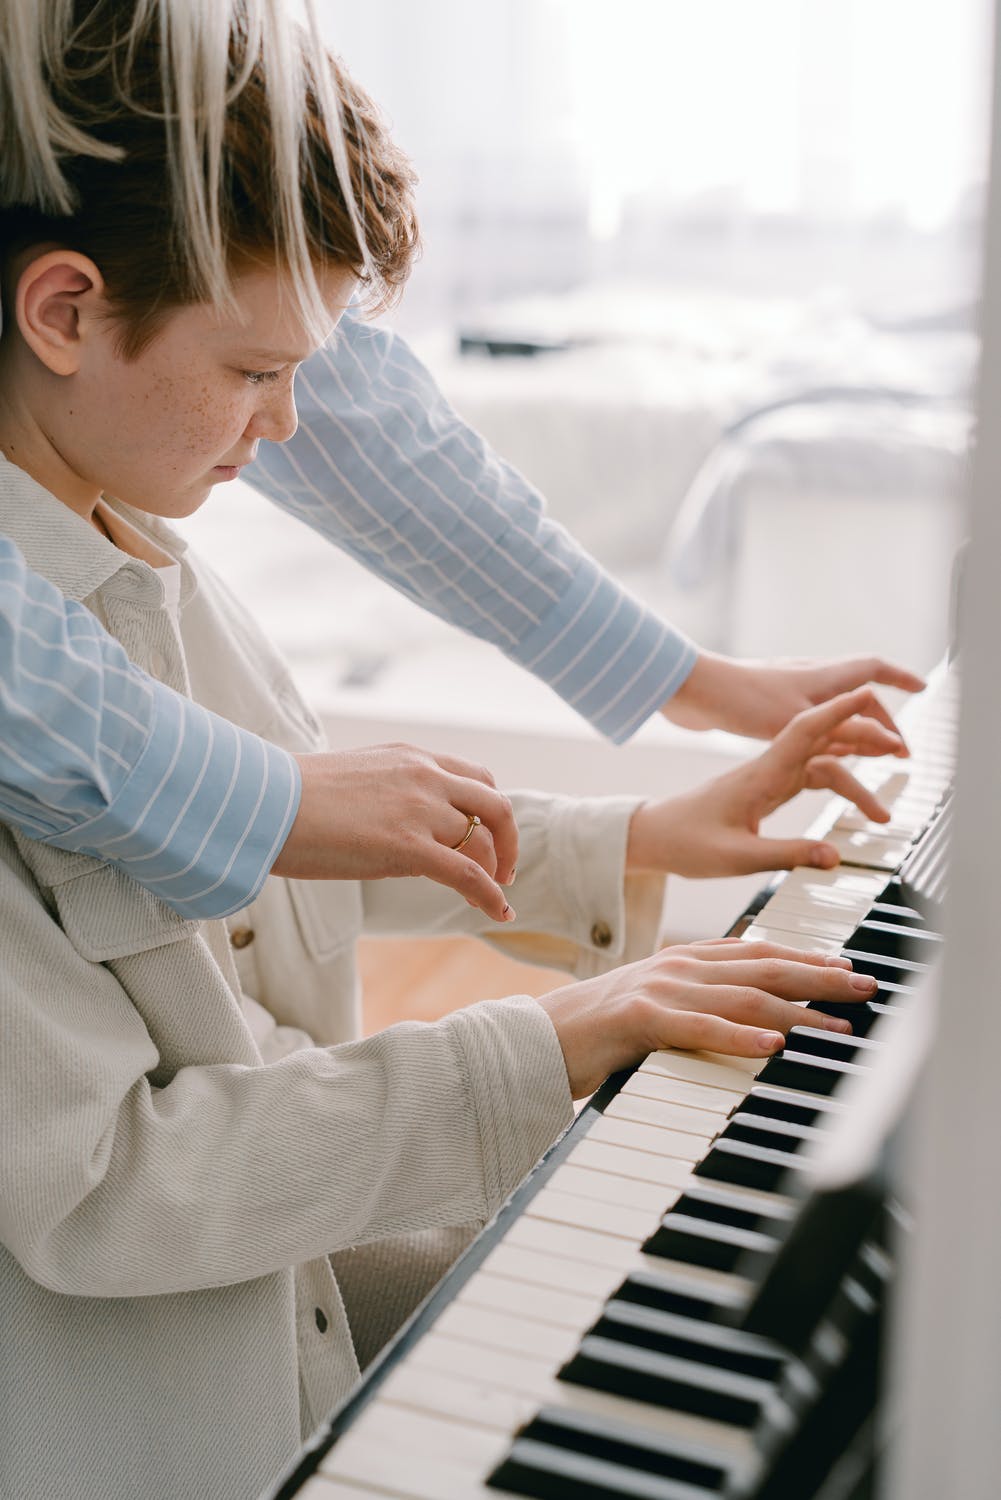 Apprendre à bien positionner ses doigts au piano